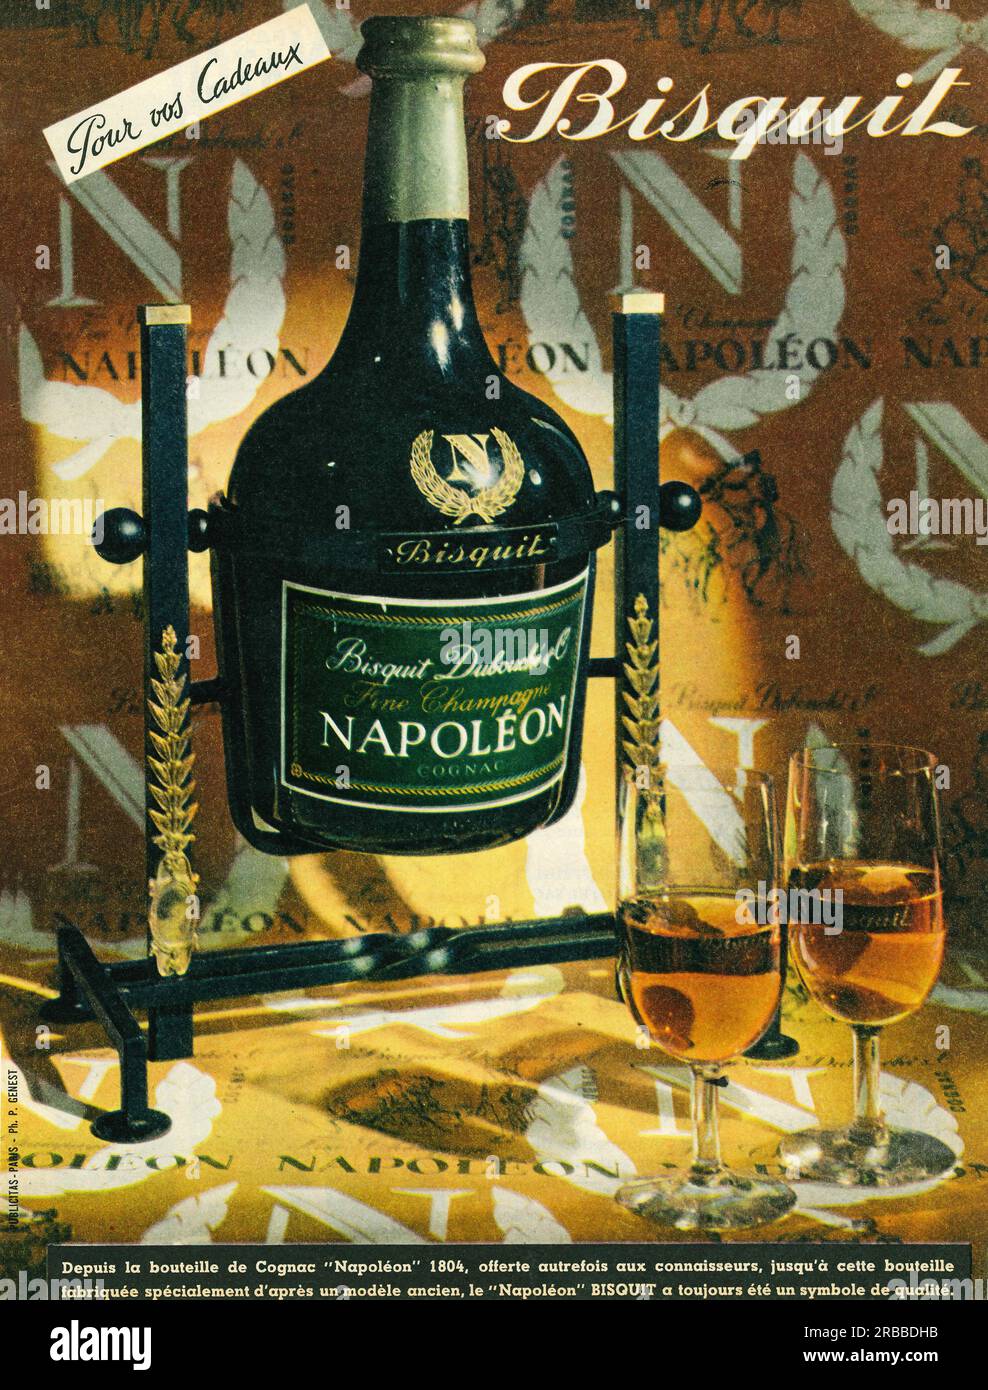 Bisquit Dubouche „Bisquit“ Napoleon Fine Champagne Cognac, französische Druckwerbung, 1959 Stockfoto